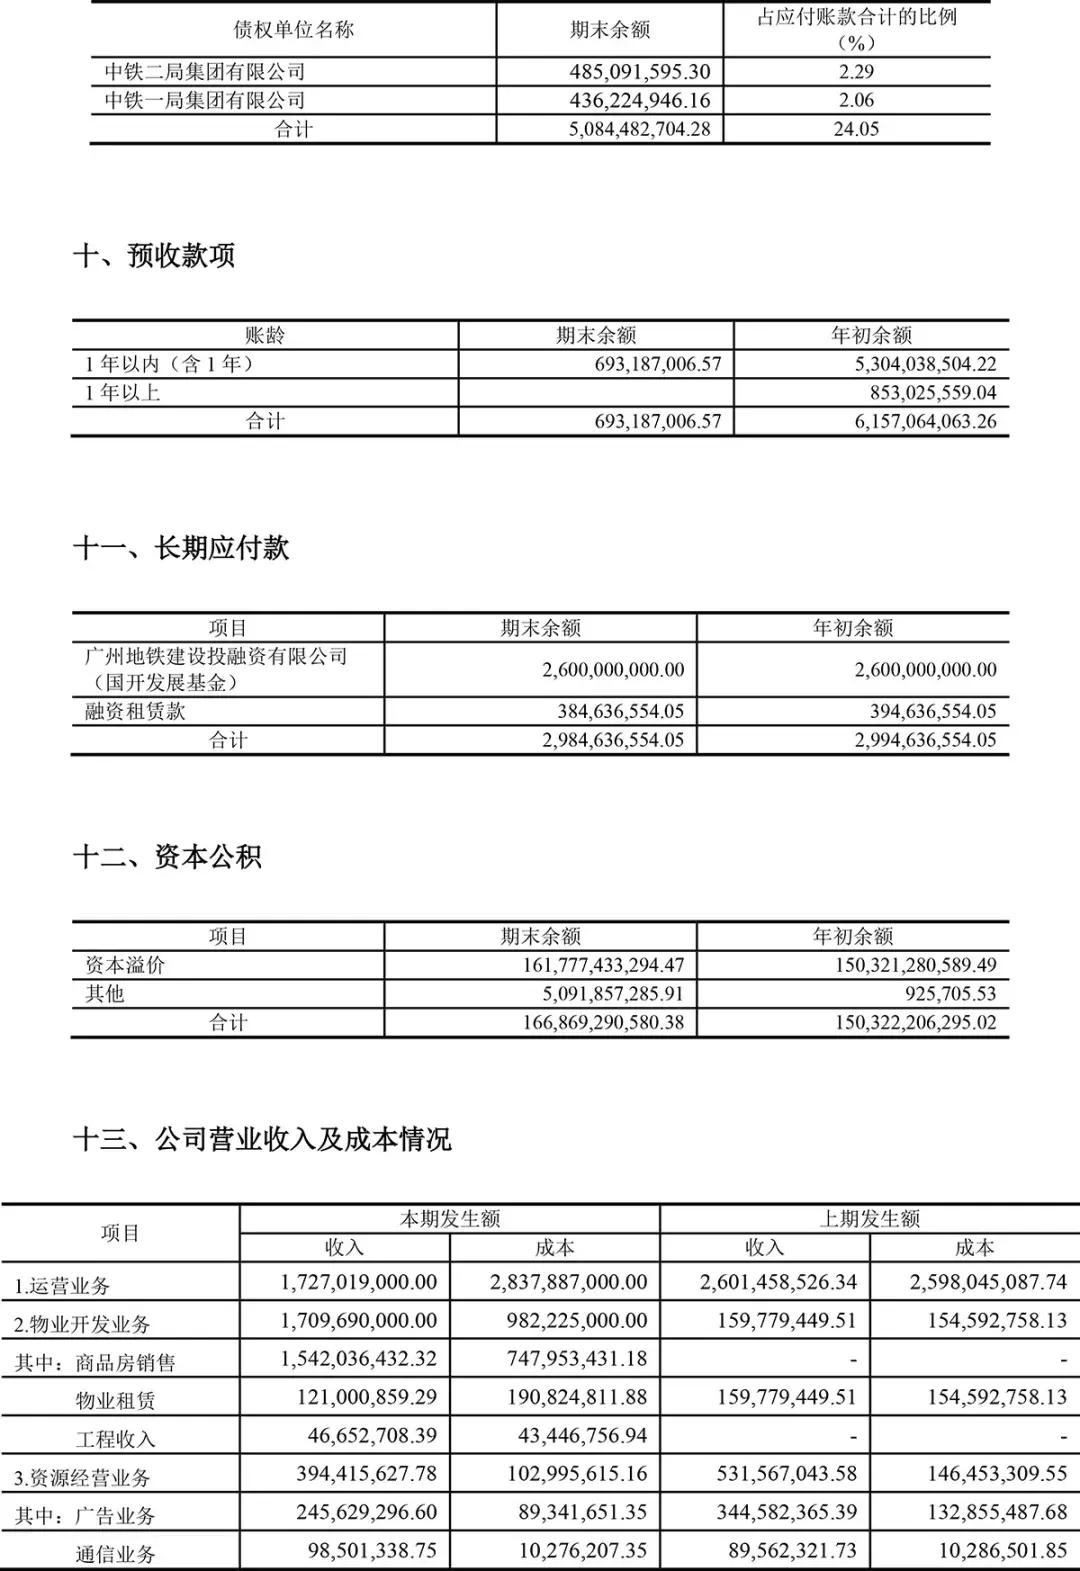 (广州地铁集团有限公司)广州地铁集团有限公司2020年半年度财务报表  第15张